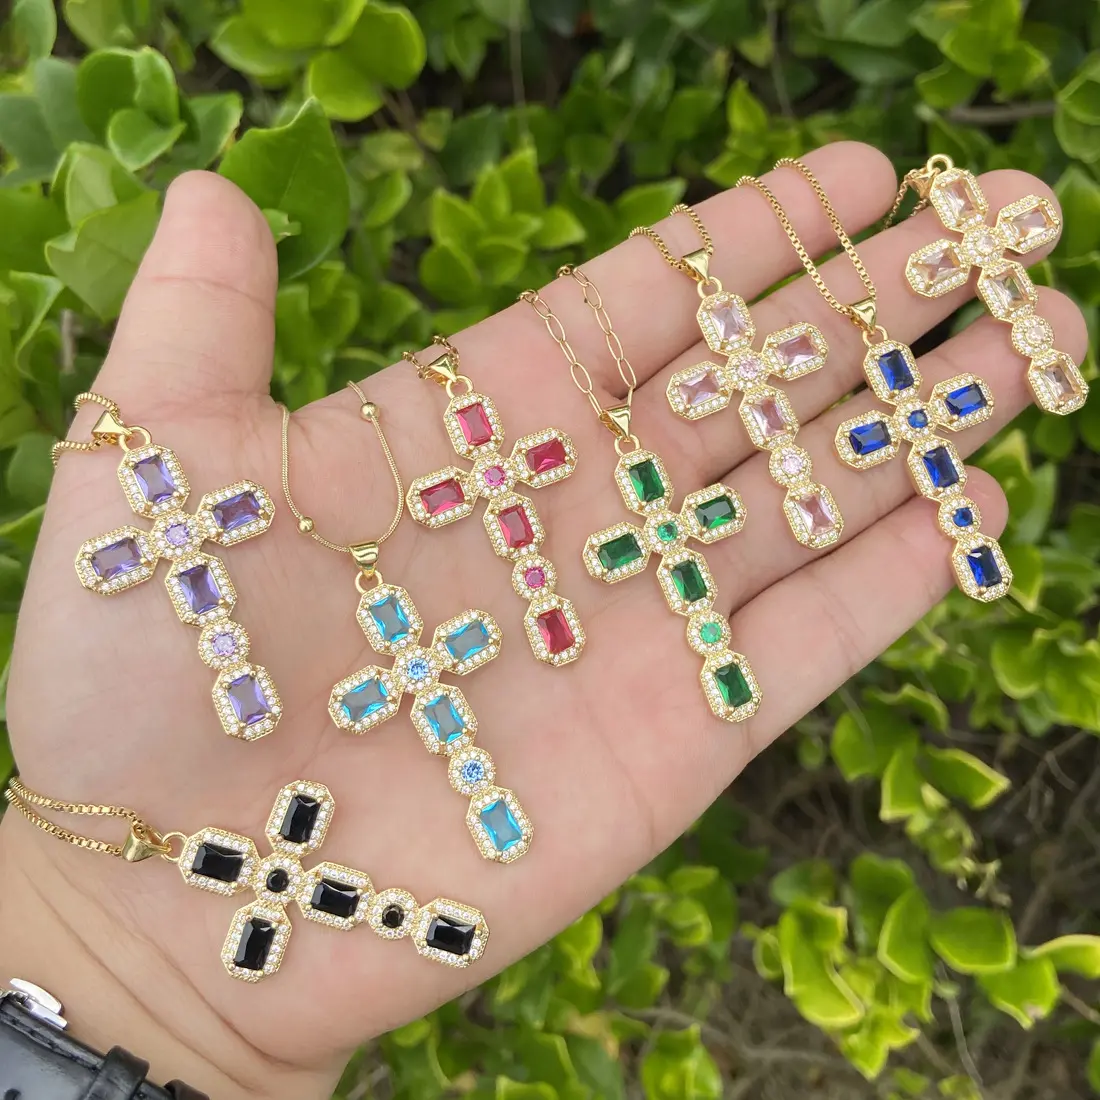 Luxury Gemstone Necklace Fashion Religious Catholic Christian Cross Pendant Necklace For Men Women